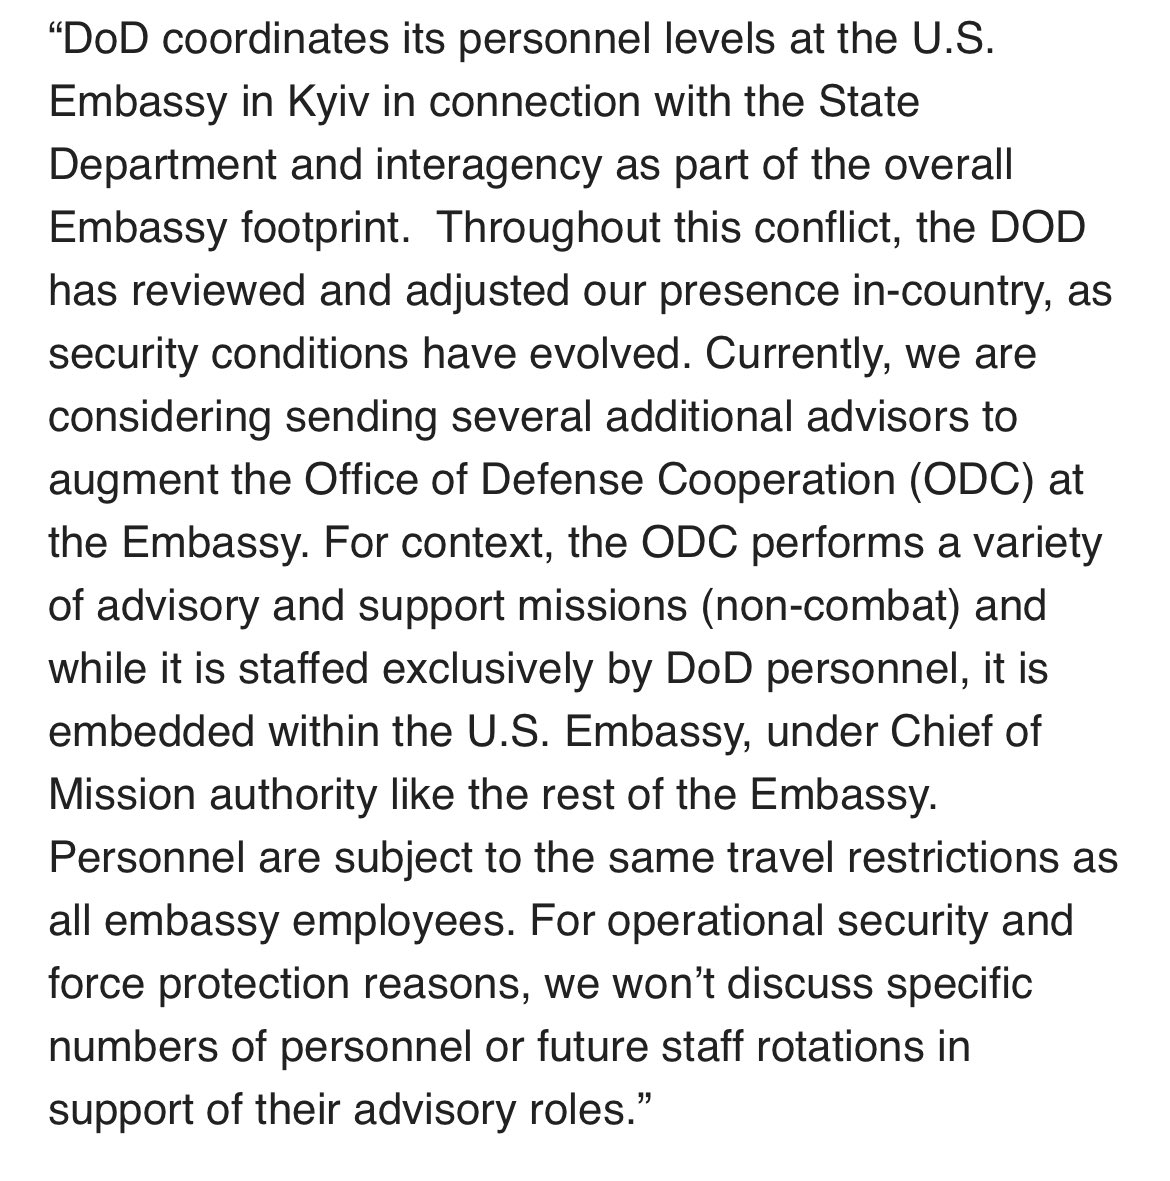 अमेरिका यूक्रेन में और अधिक सैनिक भेज सकता है, जो दूतावास में सलाहकार के रूप में काम करेंगे, युद्ध में शामिल नहीं होंगे। @PentagonPresSec से VOA तक - वर्तमान में, हम दूतावास में रक्षा सहयोग कार्यालय को बढ़ाने के लिए कई अतिरिक्त सलाहकार भेजने पर विचार कर रहे हैं। सलाह और सहायता के लिए